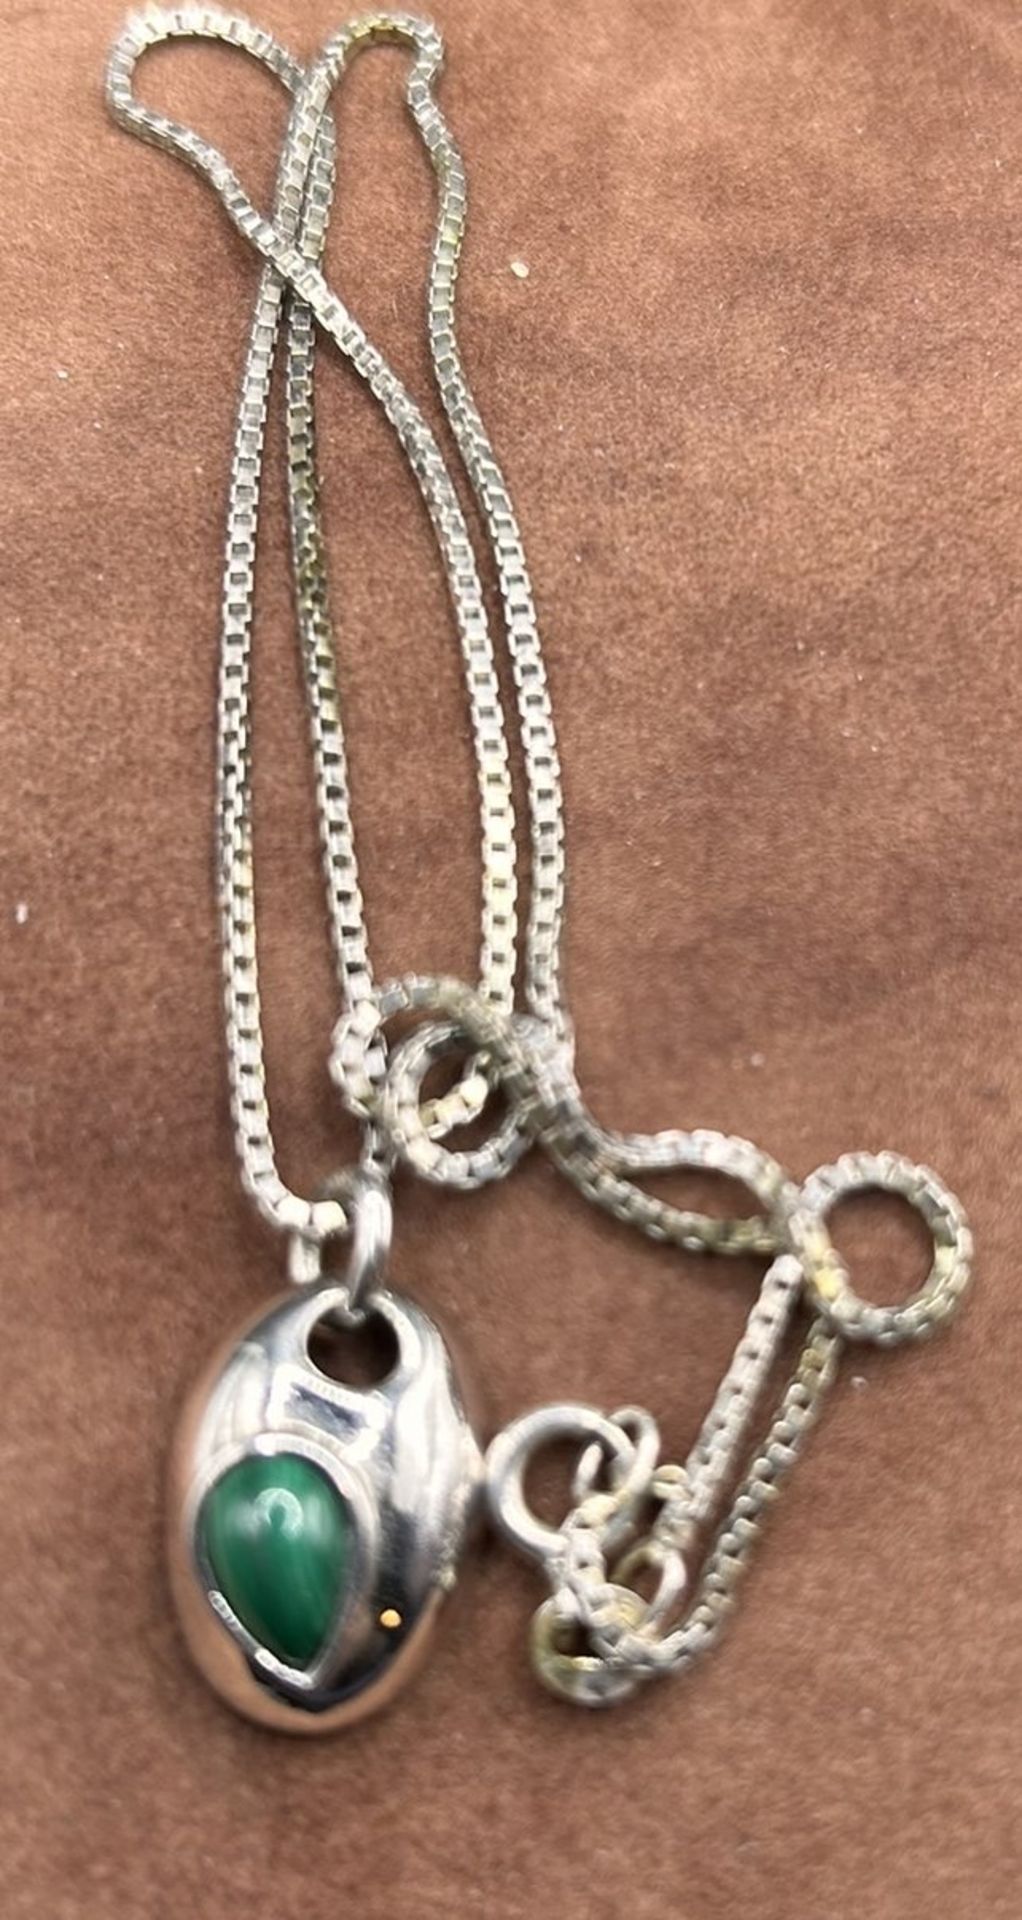 Silber-Halskette mit kl. Silber-Anhänger, grüner Stein, L-42 cm, Anhänger 2cm, 4,8 gr. - Image 2 of 2